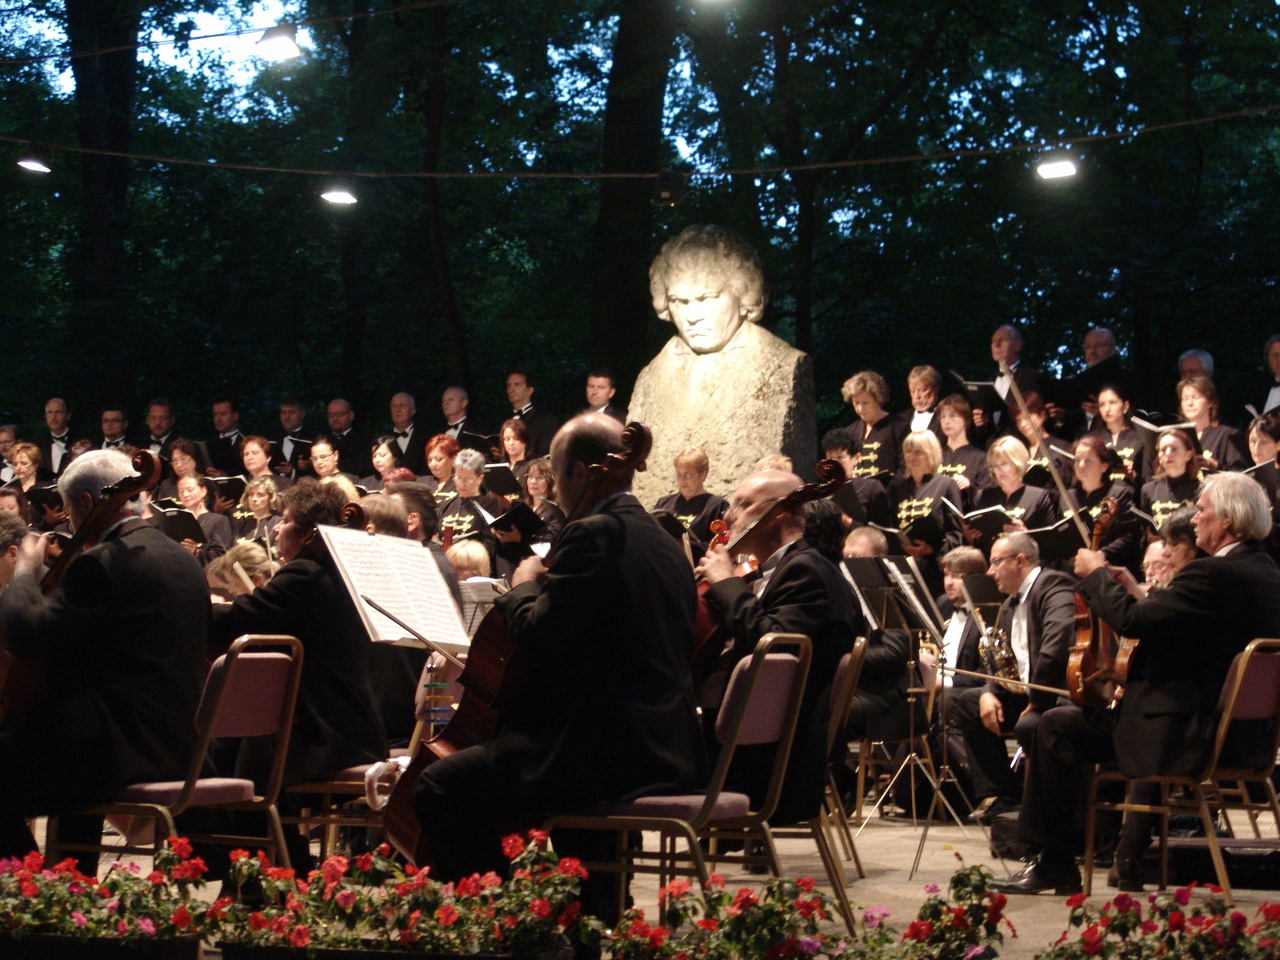 Beethovennel 60 év óta a madárcsicsergős szabadban – martonvásári zenés találkozás